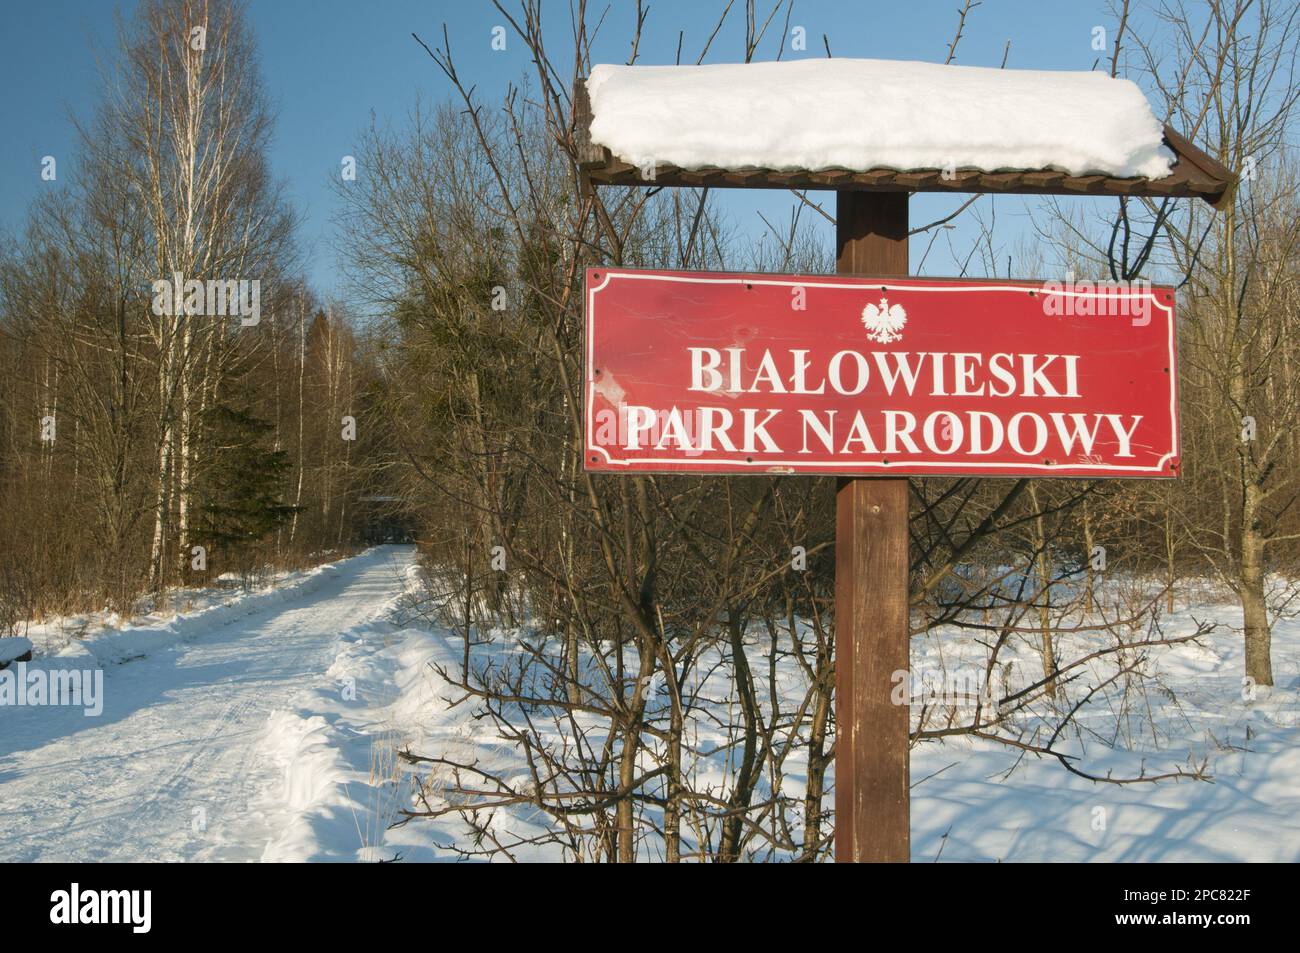 „Bialowieski Park Narodowy“-Eingangsschild in Schnee, Bialowieza spezielles Schutzgebiet, Bialowieza N. P. Podlaskie Woiwodschaft, Polen Stockfoto